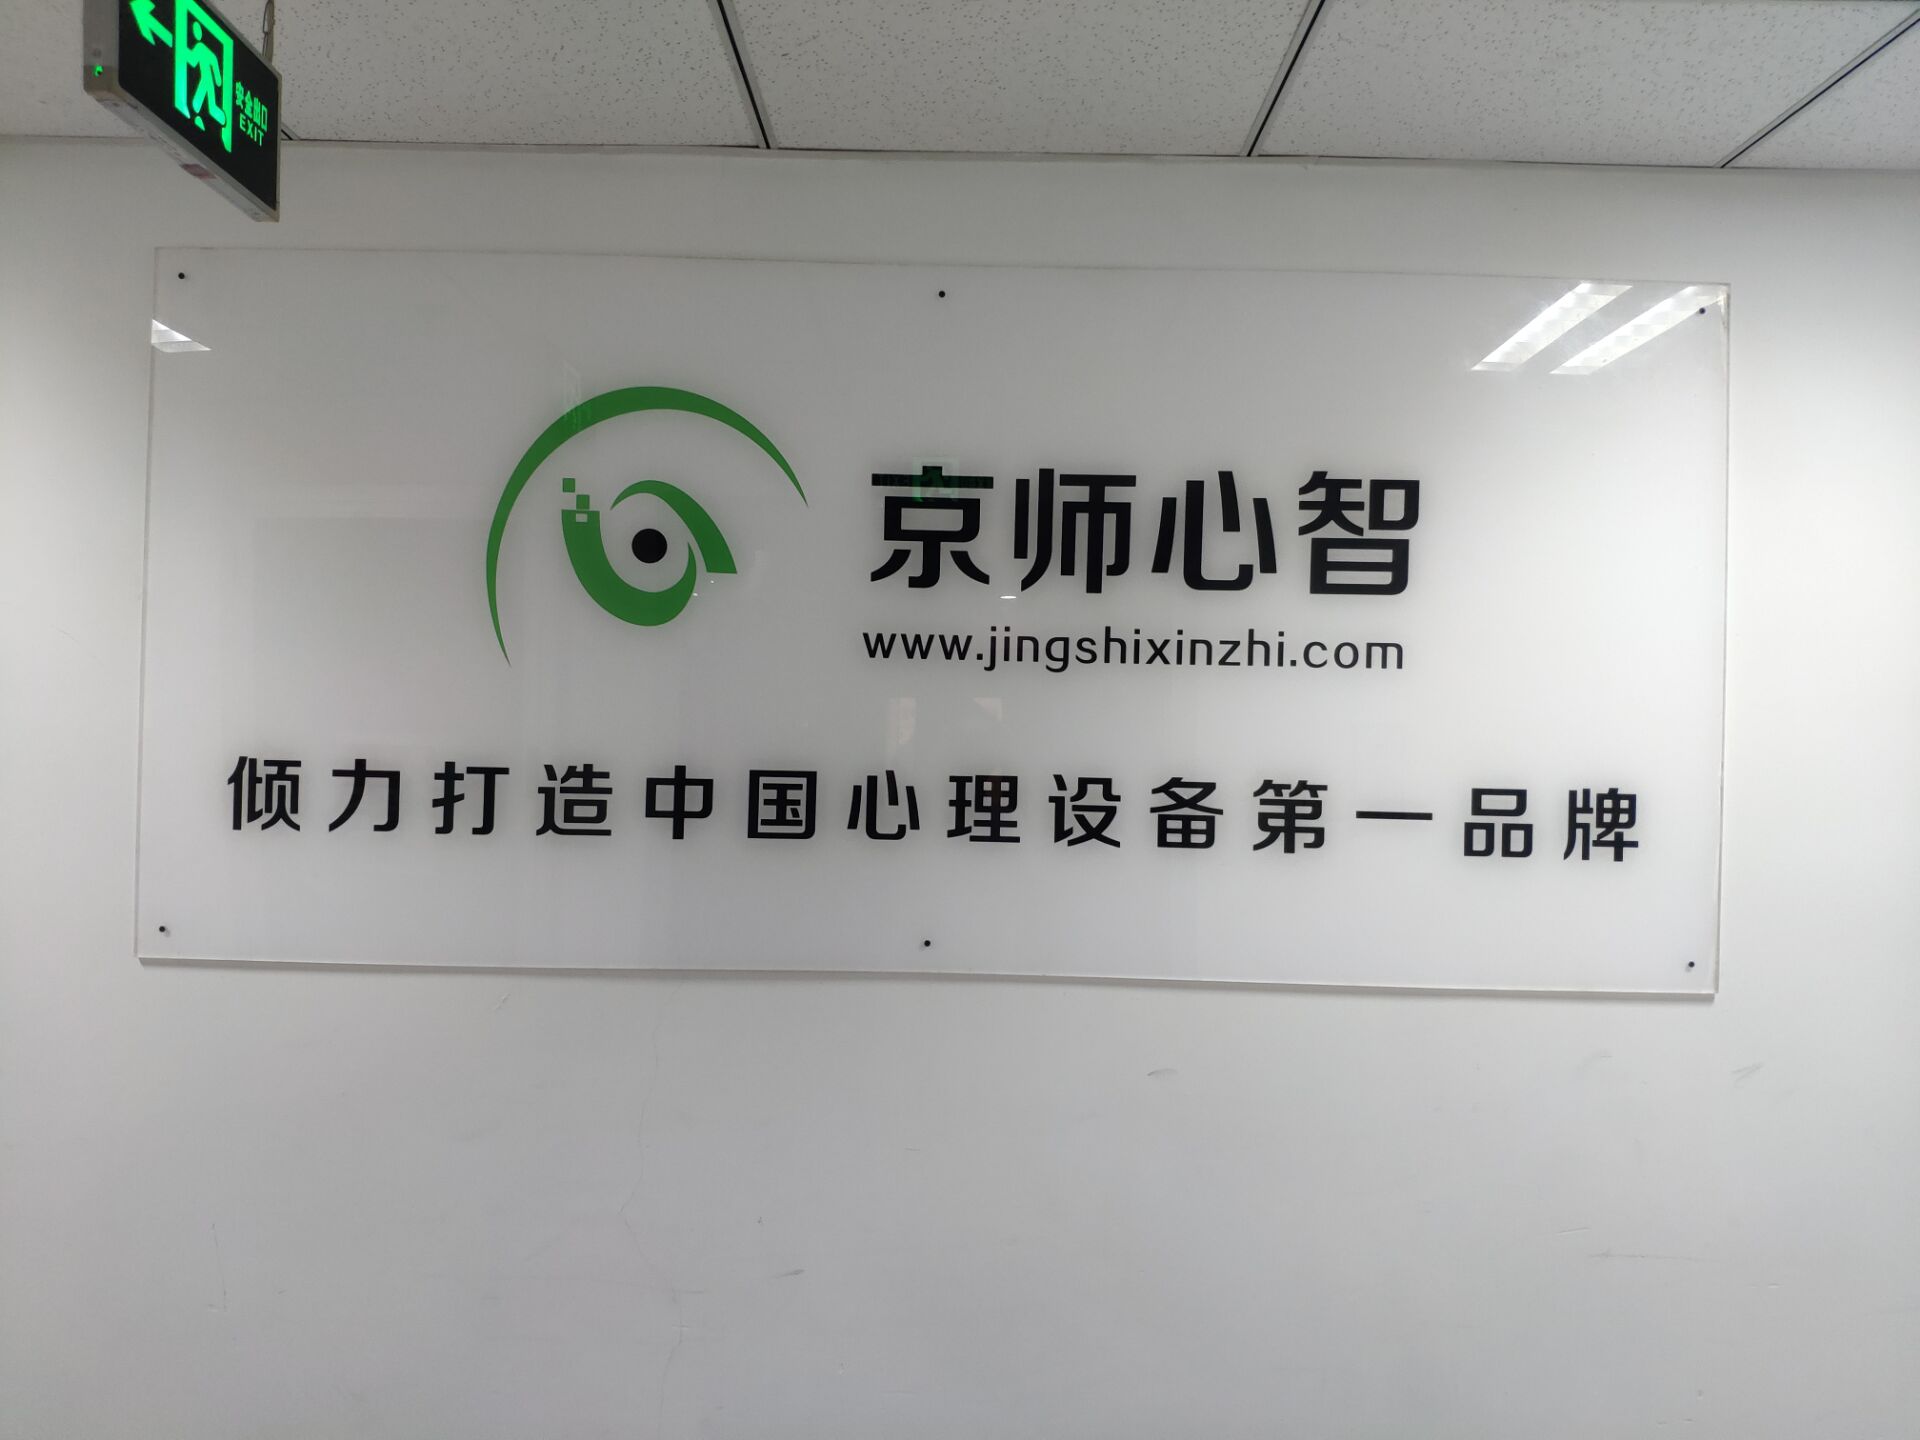 京师心智(北京)科技服务有限公司